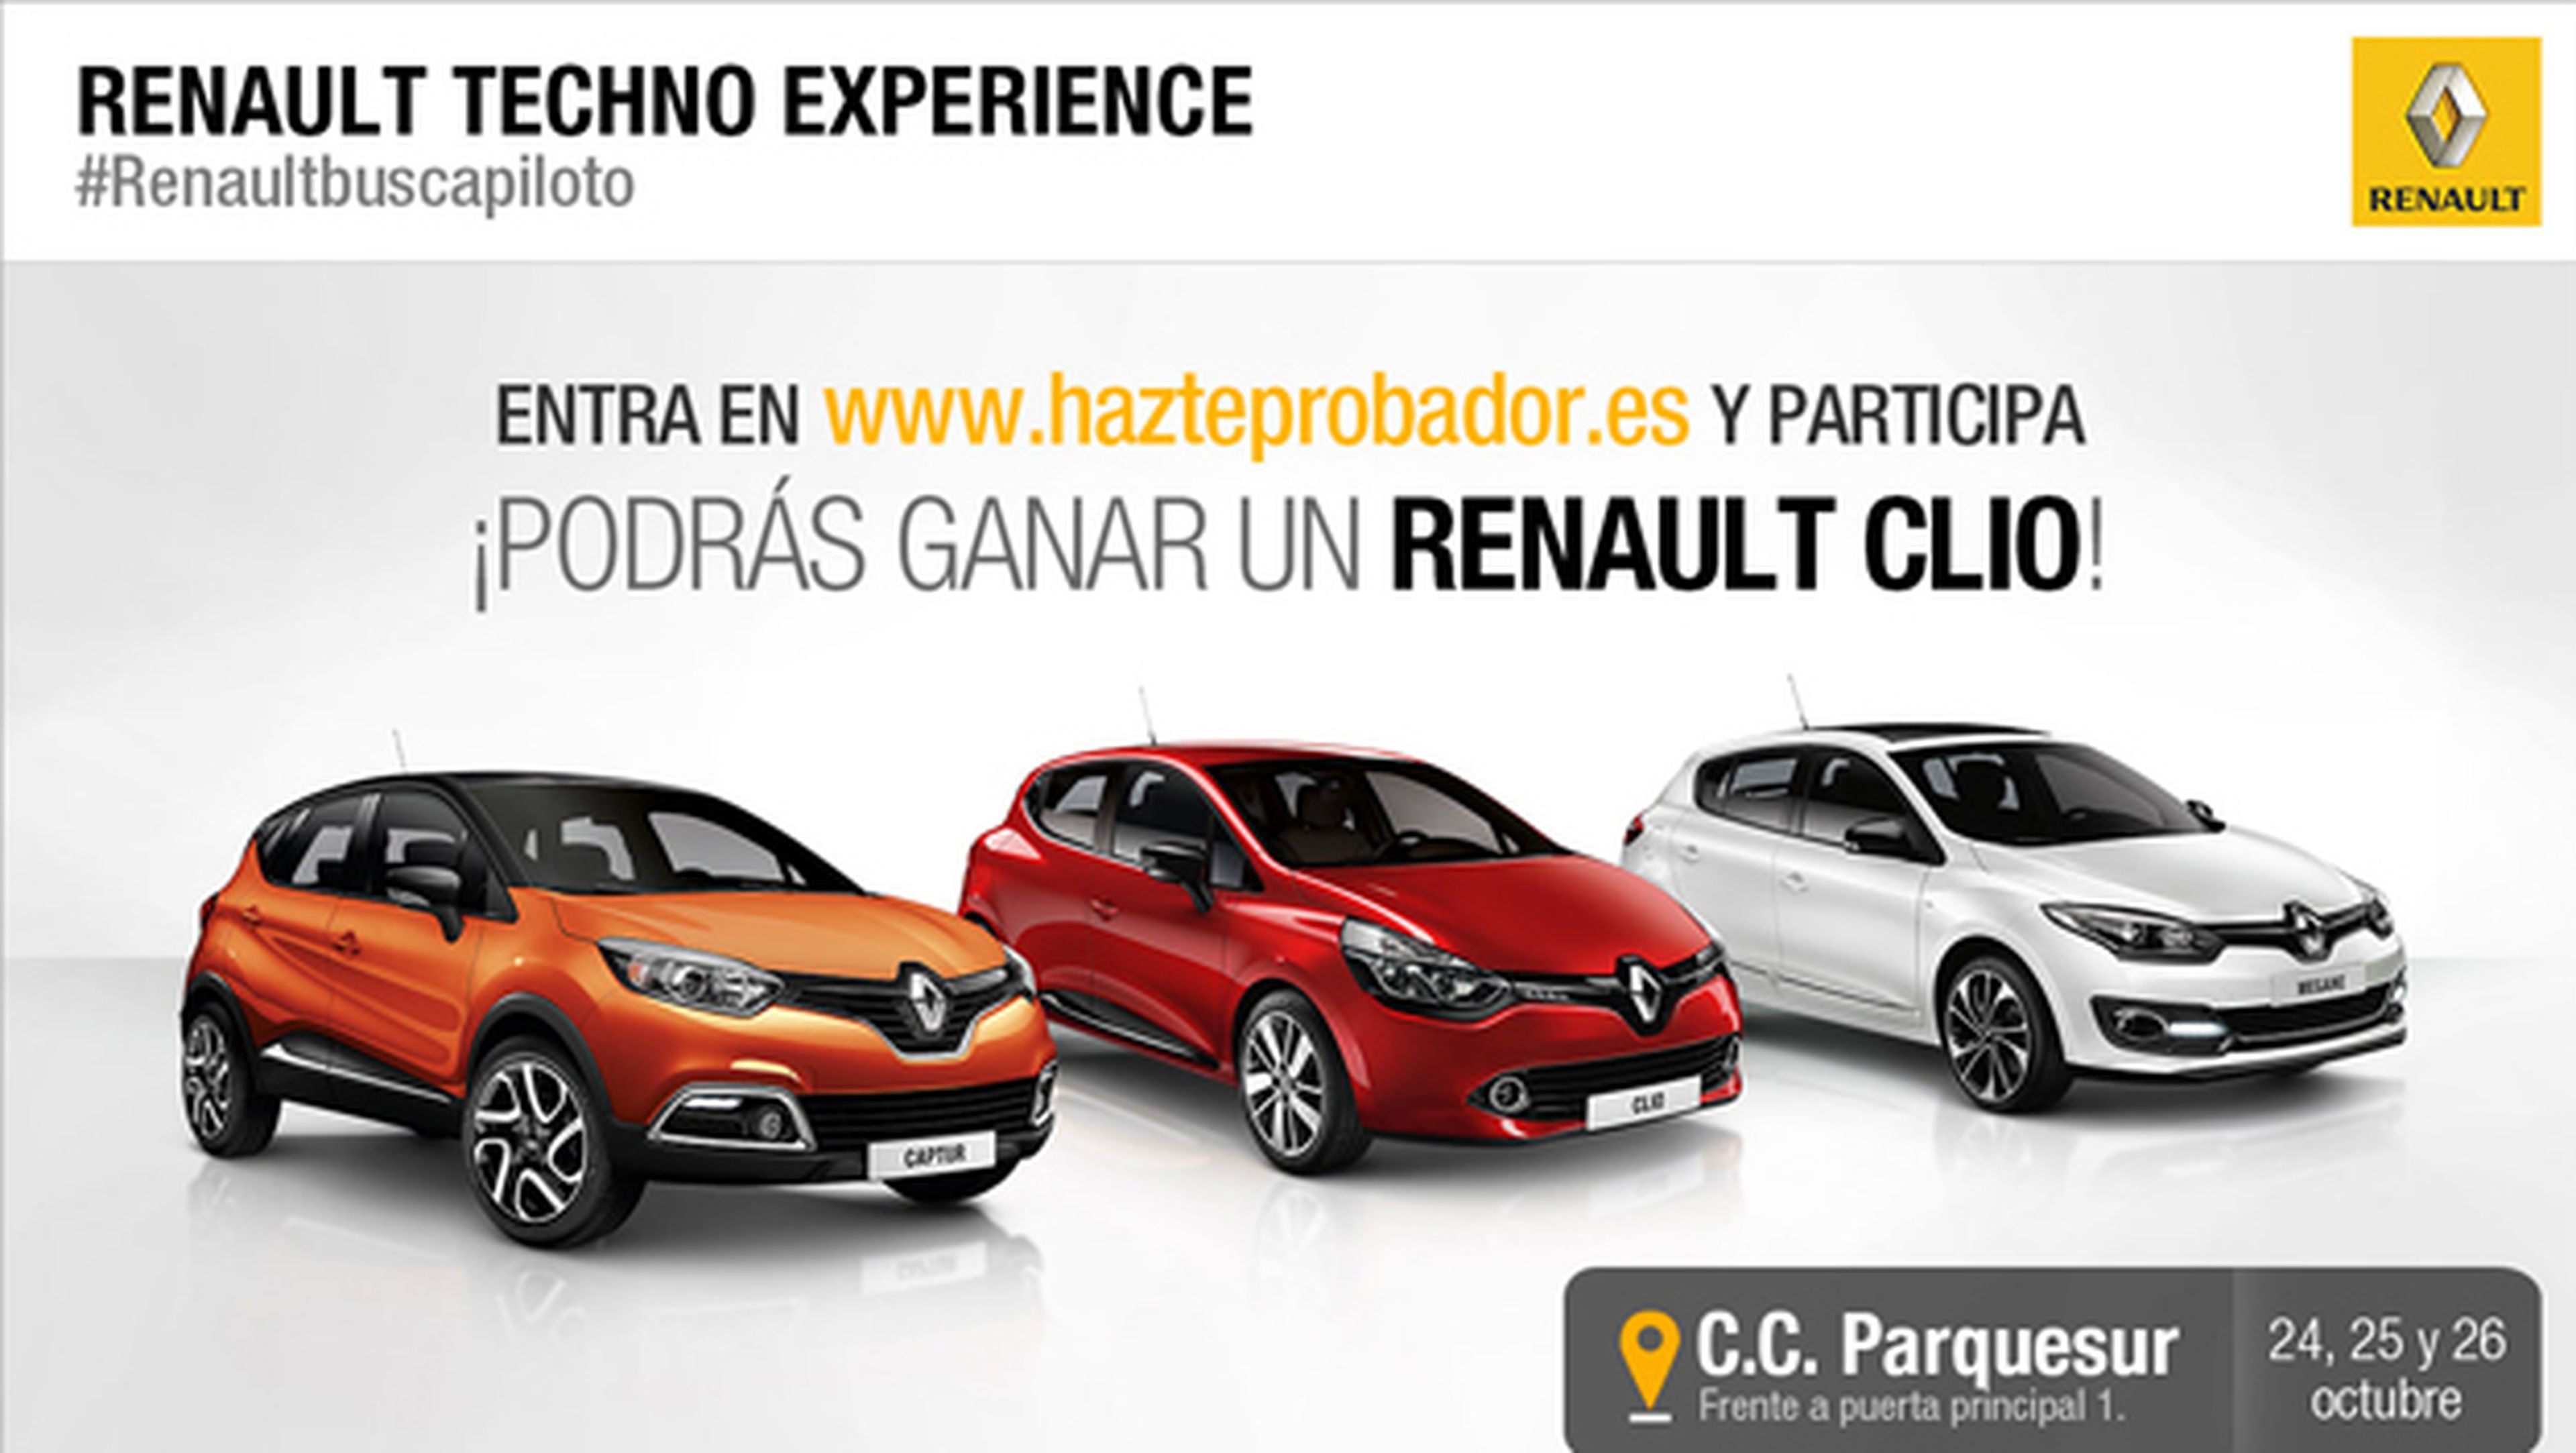 Prueba la tecnología de Renault este fin de semana en Madrid